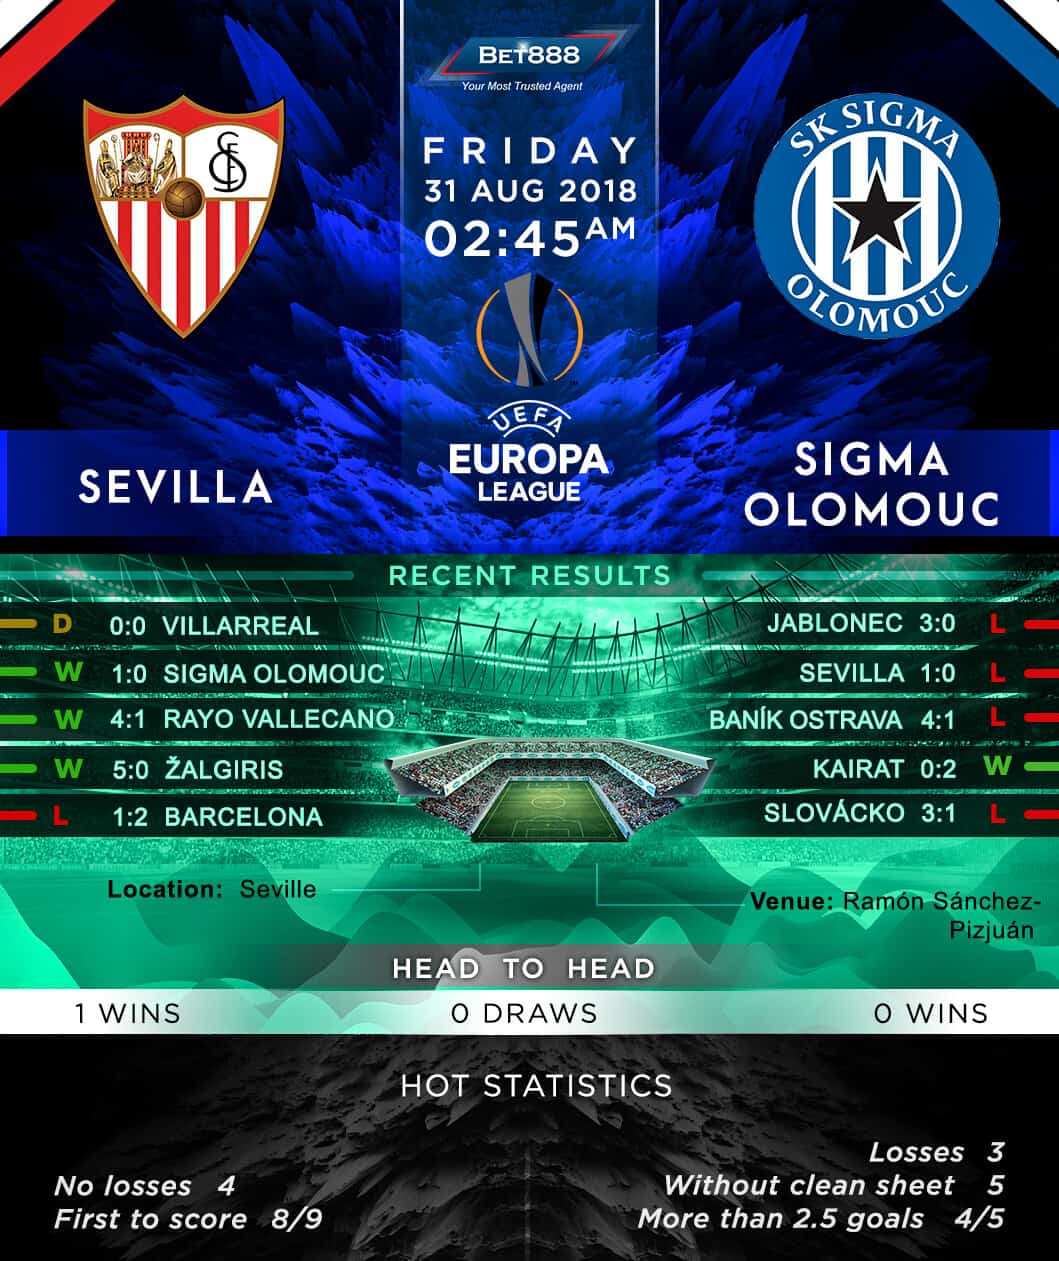 Sevilla vs Sigma Olomouc 31/08/18